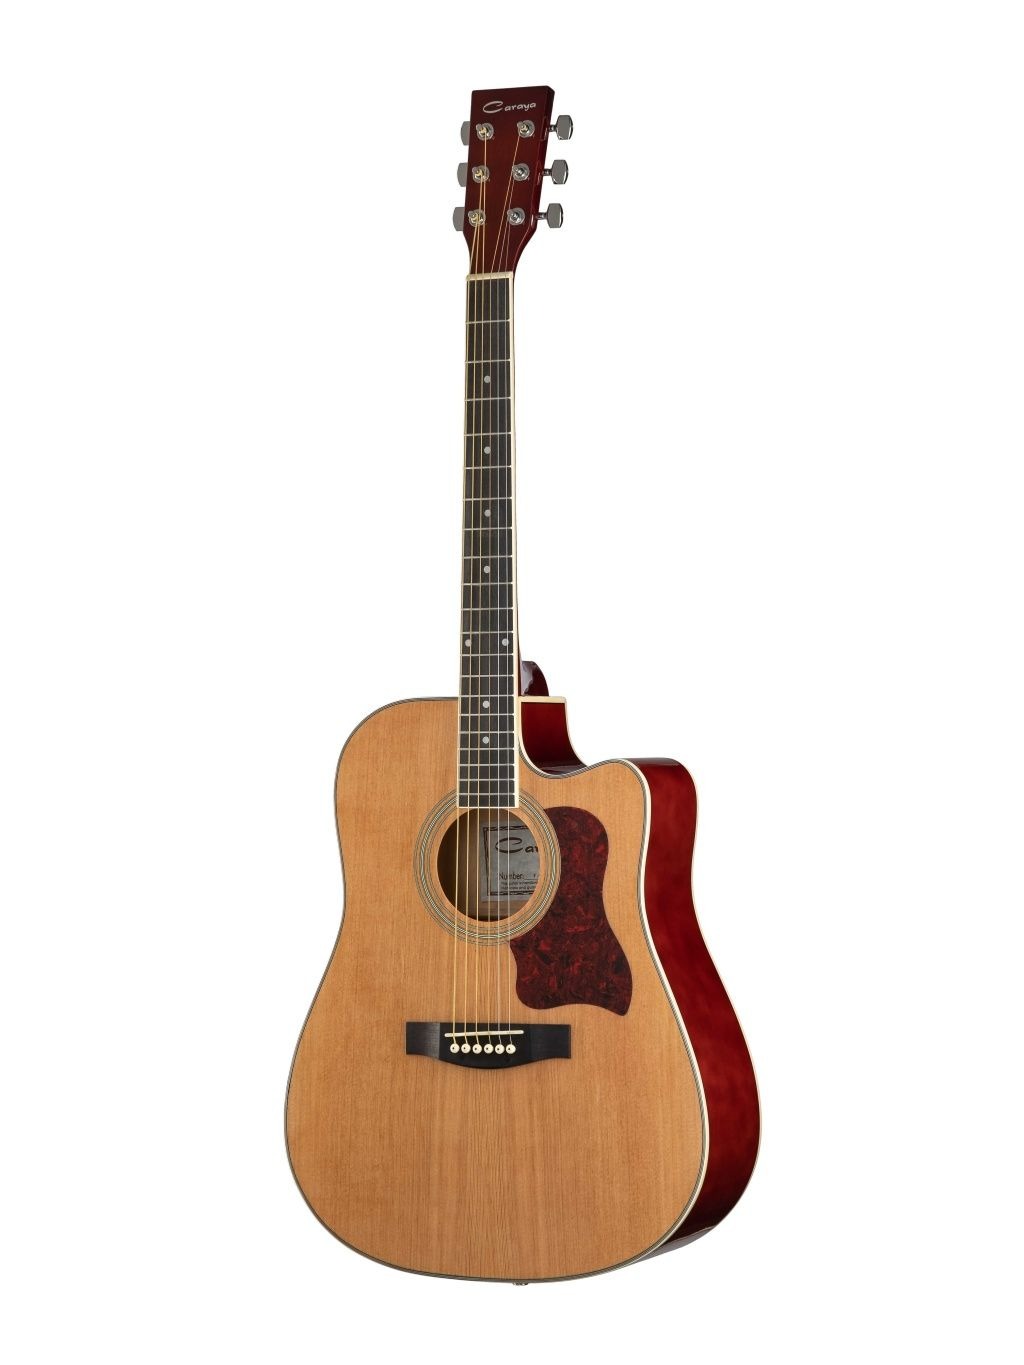 Акустические гитары Caraya F641-N гитара акустическая 104см с вырезом